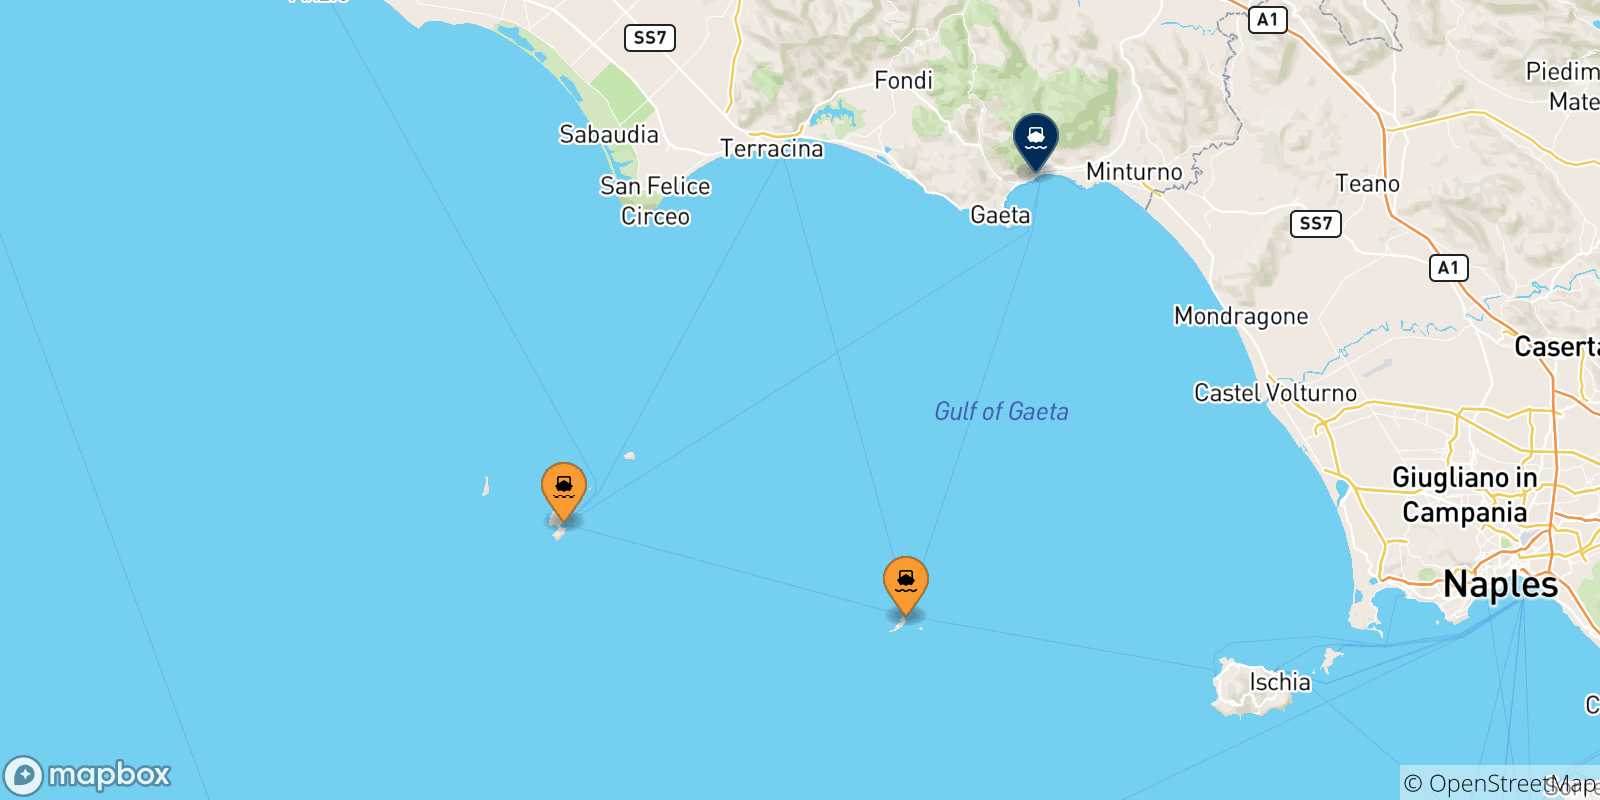 Carte des traversées possibles entre l'Italie et Formia